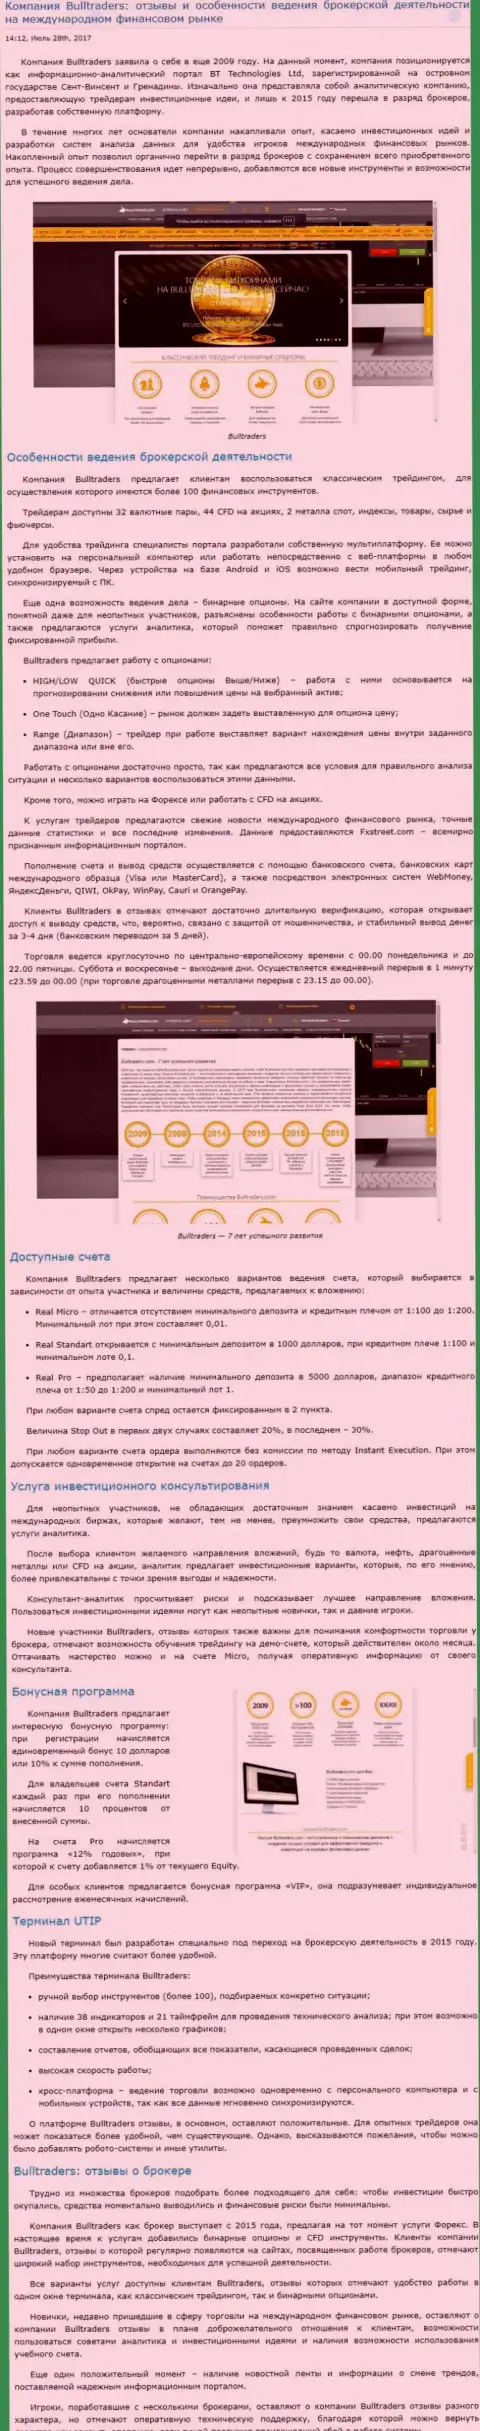 Рассмотрение правил торговли валютного брокера BullTraders на внебиржевом рынке Форекс на веб-сайте Besuccess Ru